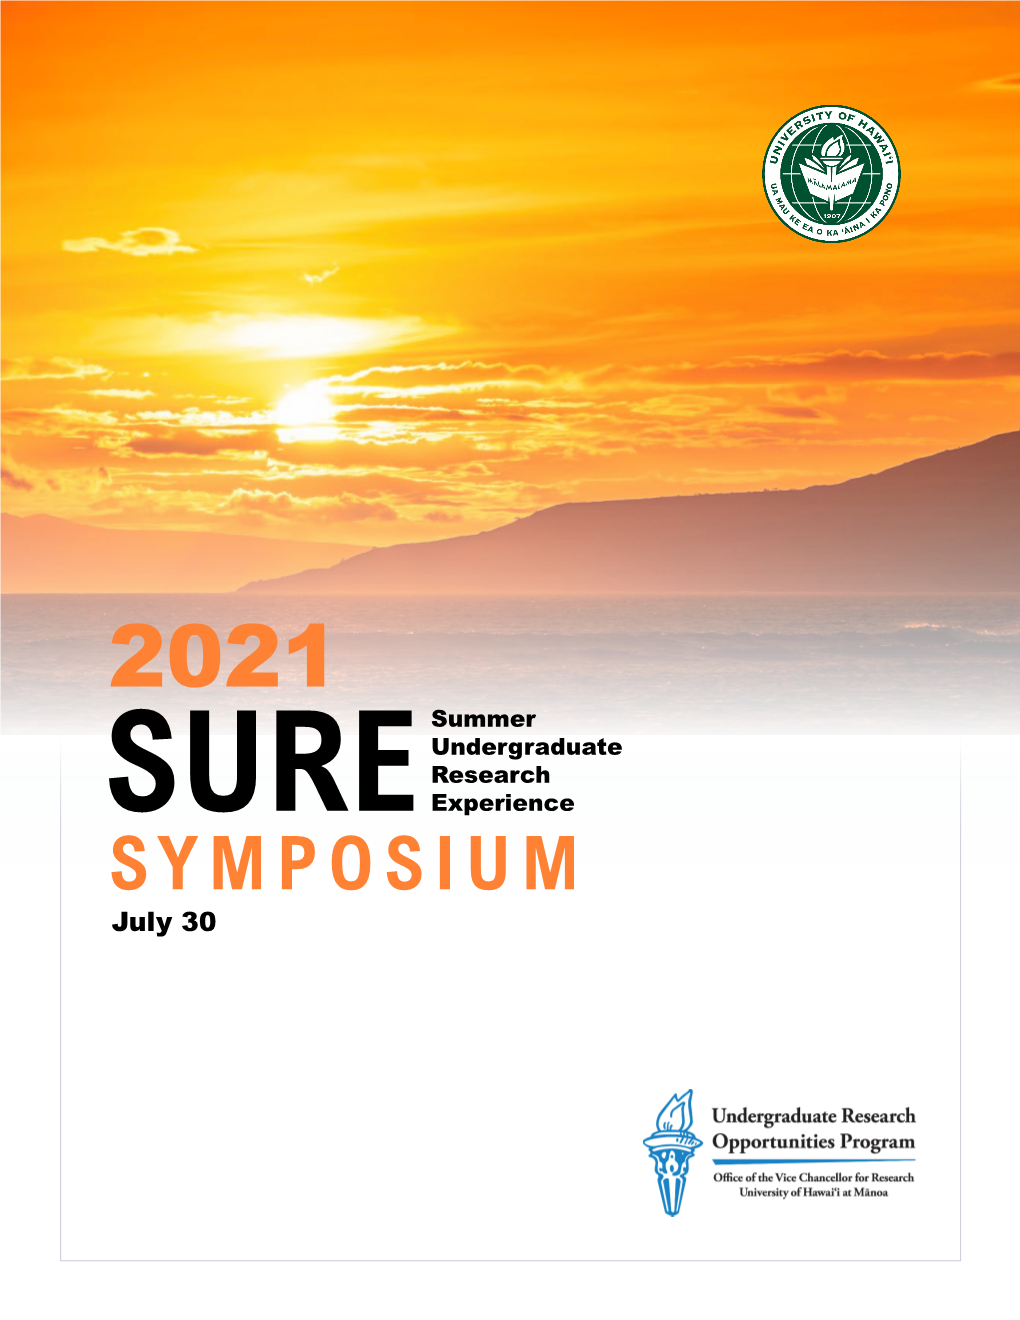 2021 SURE Symposium Event Program